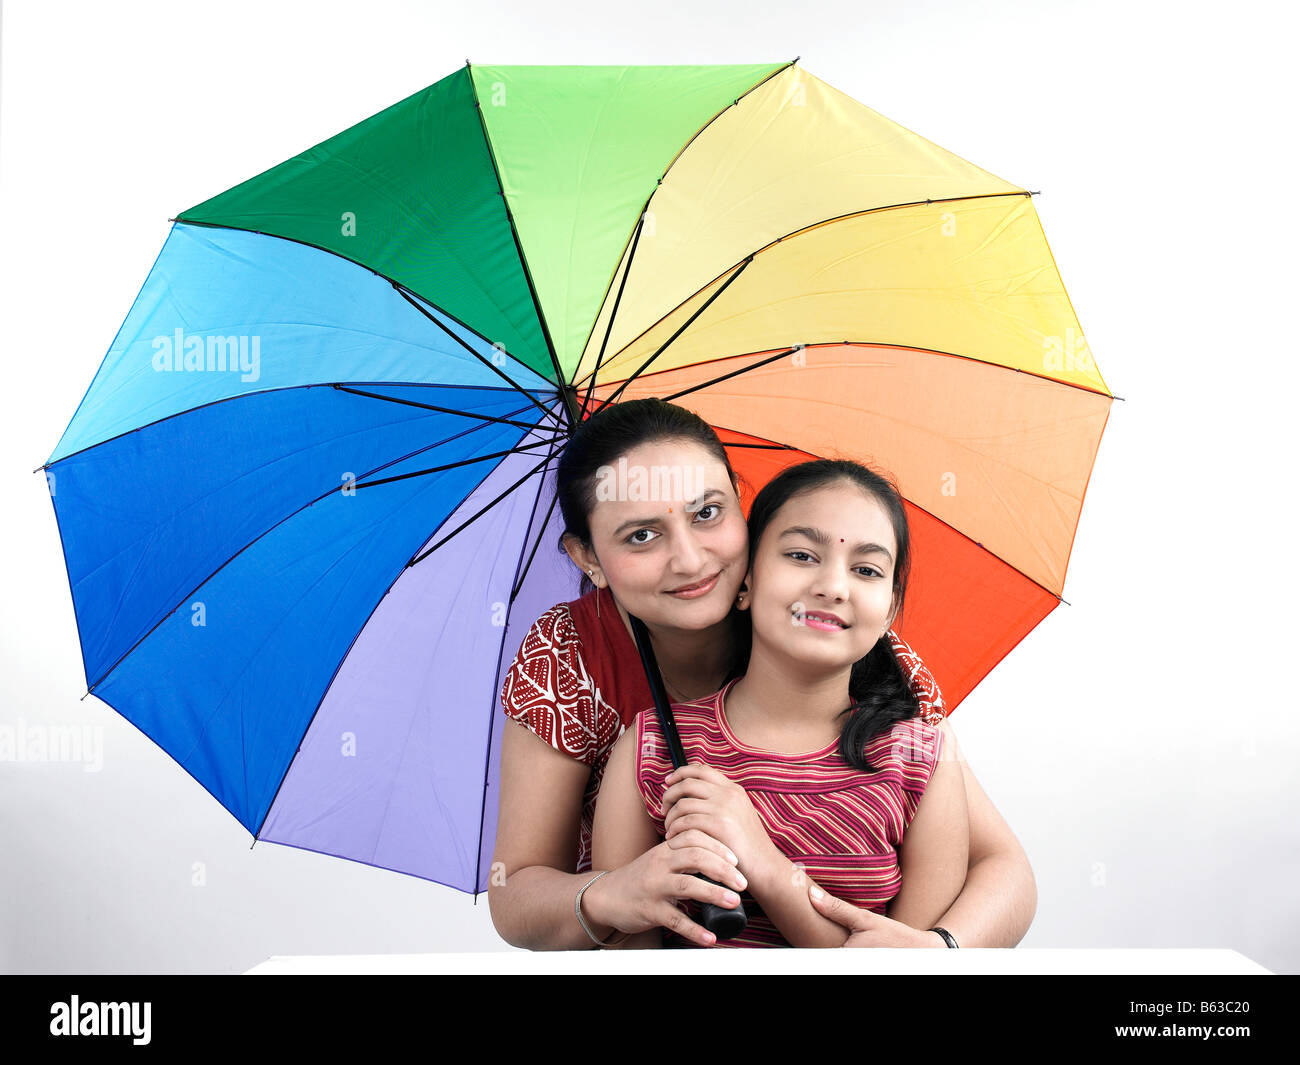 Мама зонтик. Семья под зонтиком. Фото семья под зонтом. Пара с радужным зонтом. Мама с дочкой под зонтом Радуга.